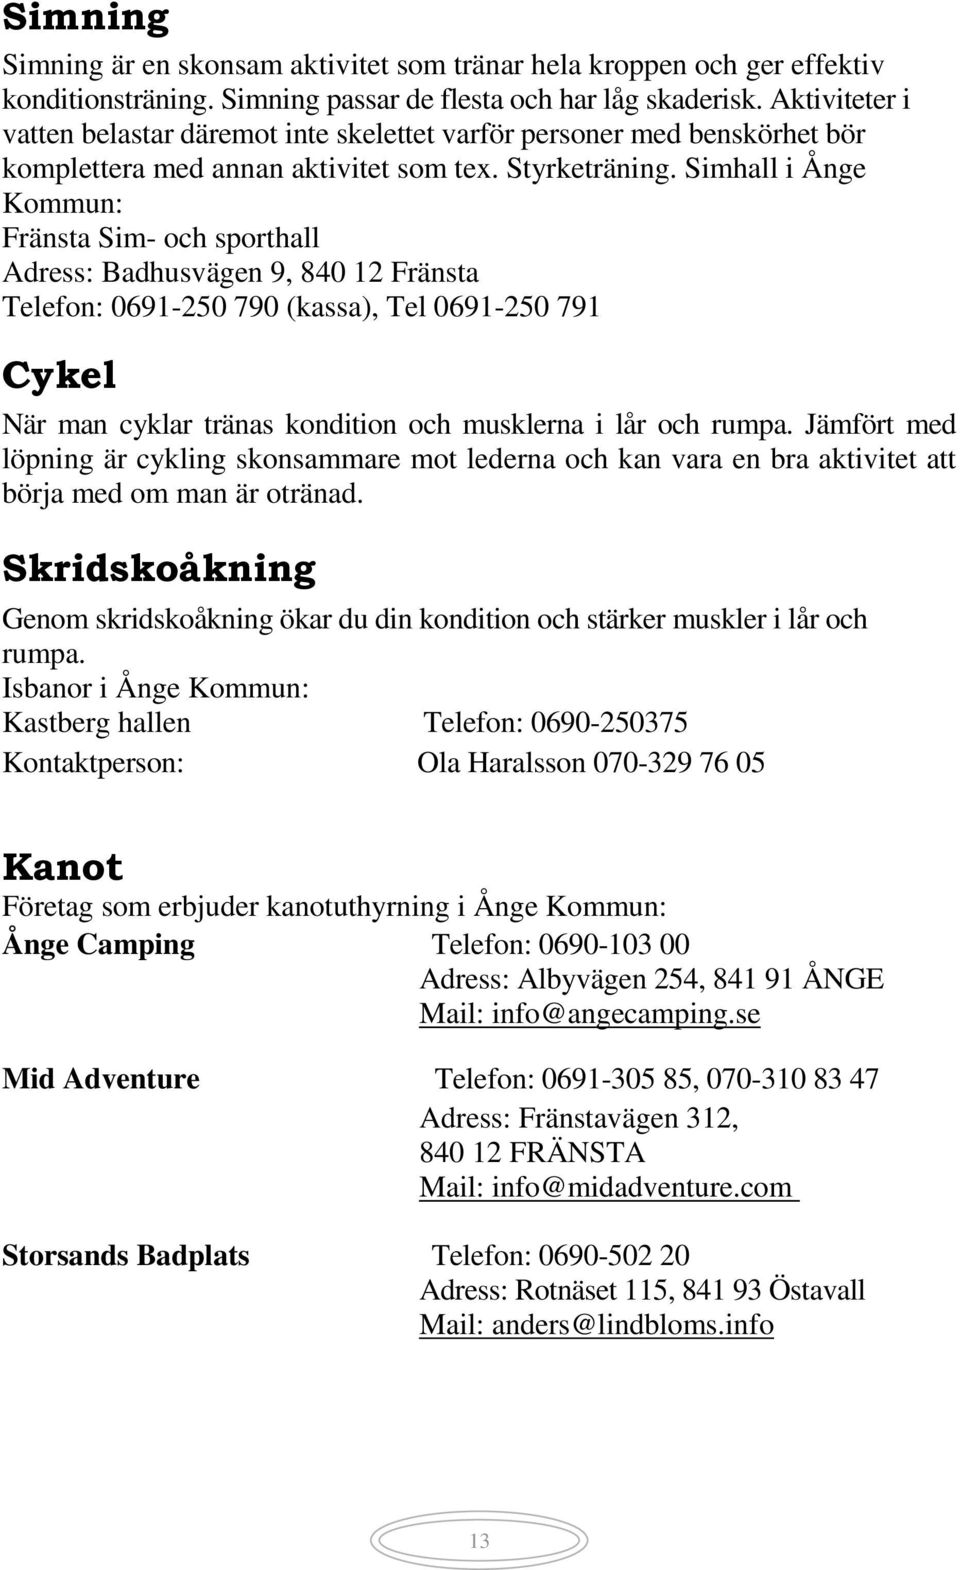 Simhall i Ånge Kommun: Fränsta Sim- och sporthall Adress: Badhusvägen 9, 840 12 Fränsta Telefon: 0691-250 790 (kassa), Tel 0691-250 791 Cykel När man cyklar tränas kondition och musklerna i lår och